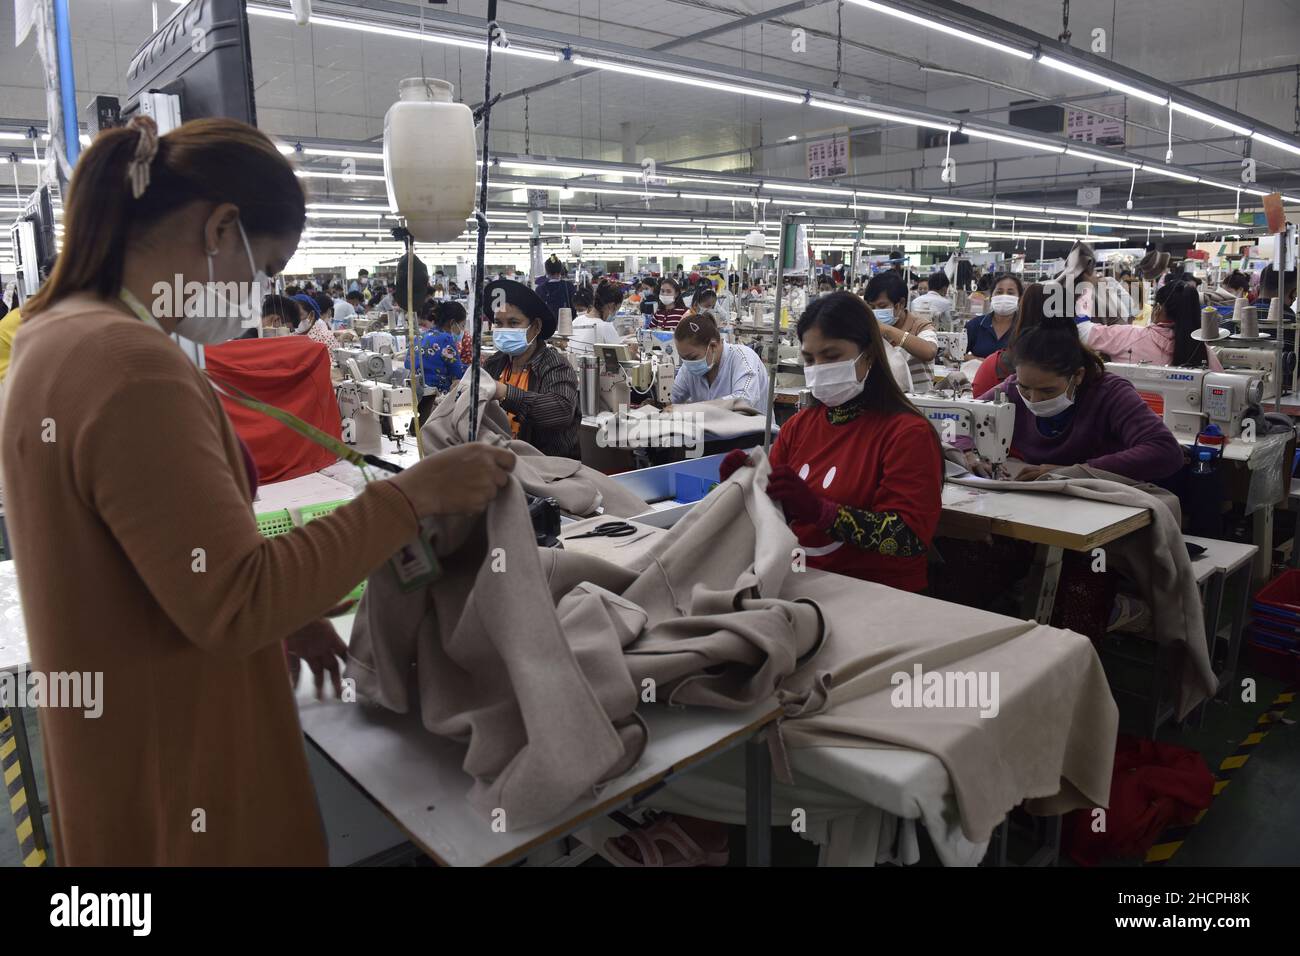 (211231) -- PHNOM PENH, 31. Dezember 2021 (Xinhua) -- Bekleidungsarbeiter machen am 17. Dezember 2021 in einer Fabrik in Phnom Penh, Kambodscha, Kleidung. Beamte und Experten sagten, dass Kambodscha große Hoffnung auf die Regionale umfassende Wirtschaftspartnerschaft (RCEP) und das Kambodscha-China-Freihandelsabkommen (CCFTA) gesetzt hat, um sein Wirtschaftswachstum in der Zeit nach der COVID-19-Pandemie anzukurbeln. Die beiden Freihandelsabkommen sollen am 1. Januar 2022 in Kraft treten. Enjoy Ho, stellvertretender Vorsitzender der Vereinigung der Bekleidungshersteller in Kambodscha, sagte, dass die beiden Abkommen eine bessere Entwicklung für die kambodschanischen Textil- und G-Unternehmen bewirken würden Stockfoto